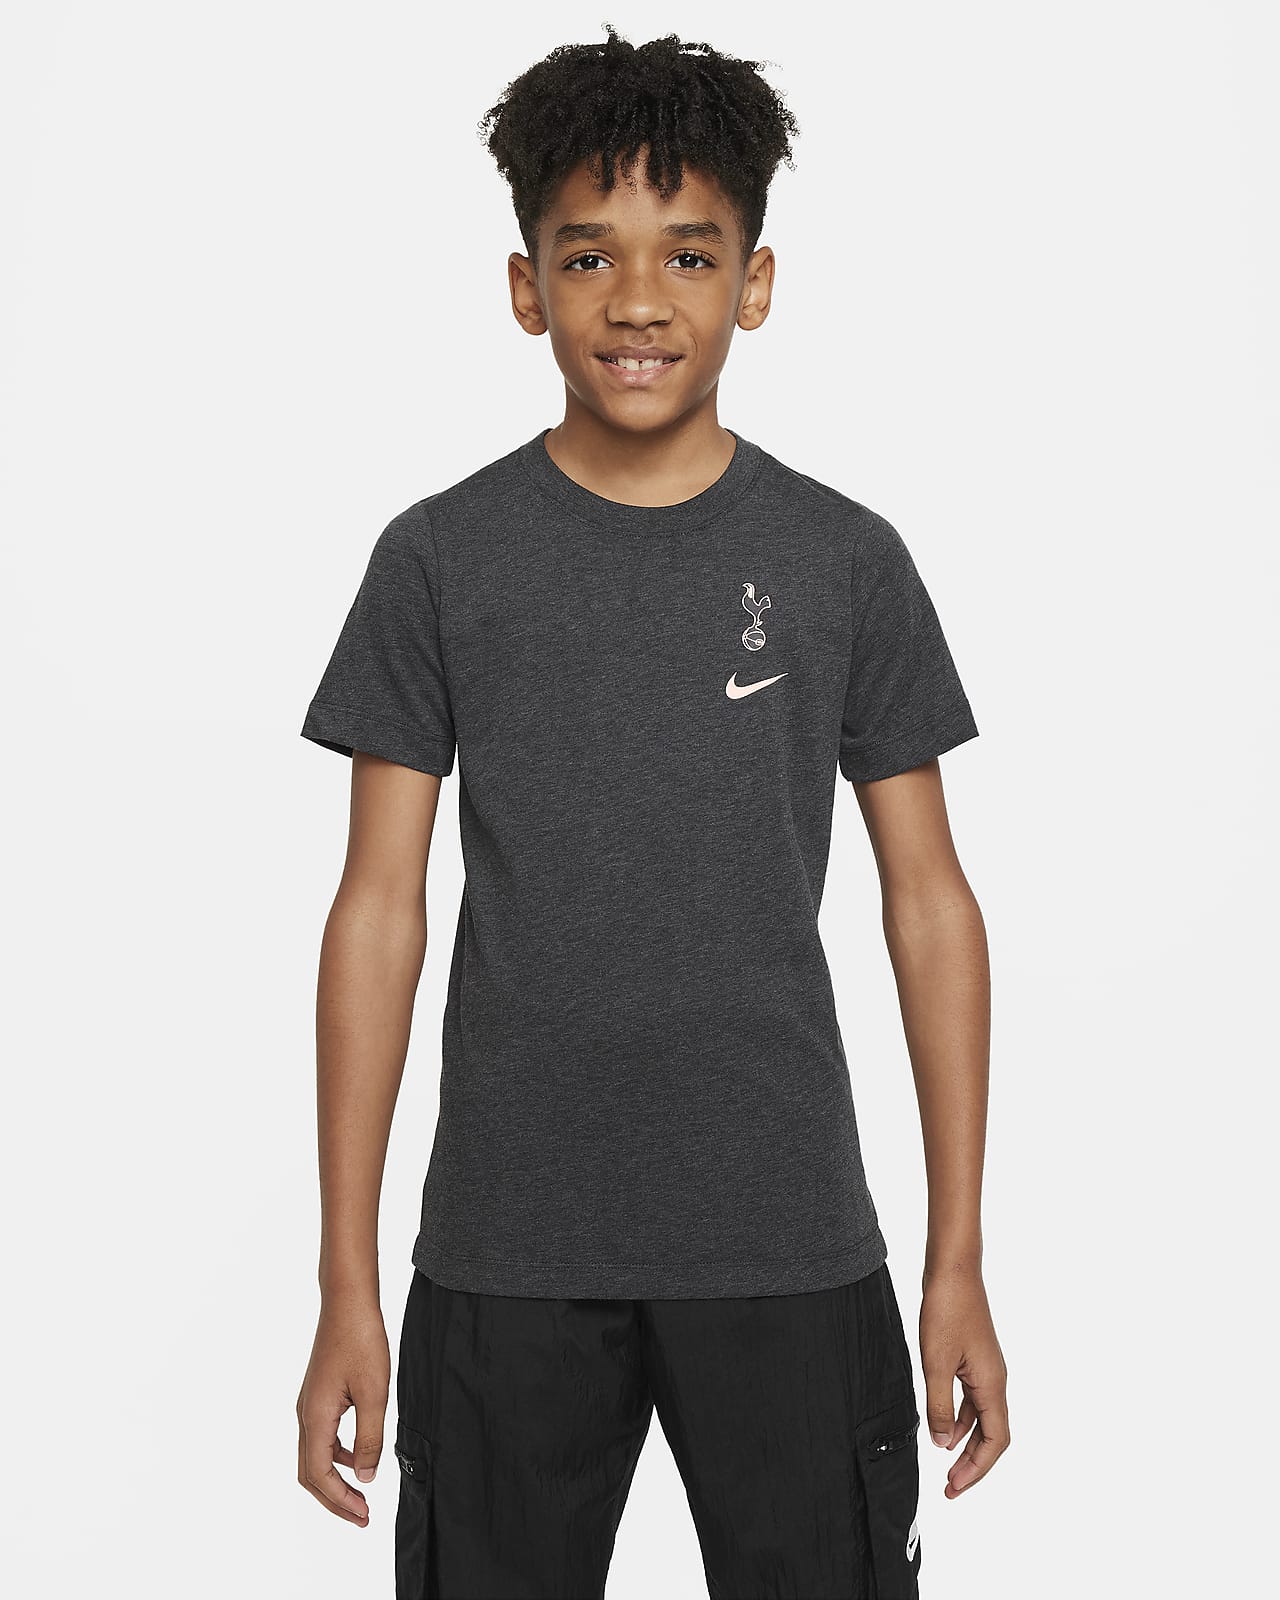 T-shirt Nike Football Tottenham Hotspur pour ado